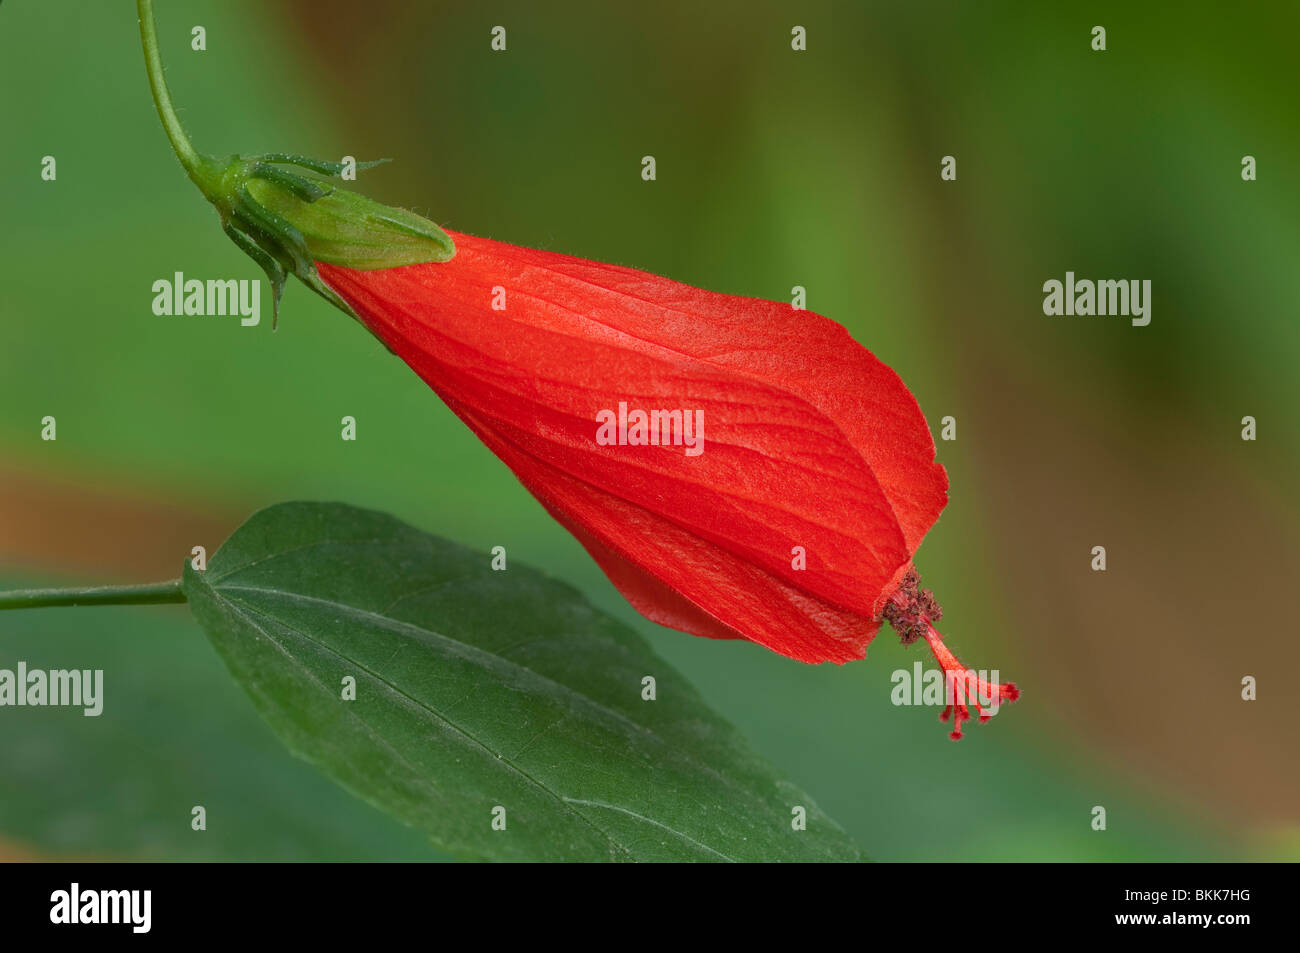 Turkcap, Turks Turban (Malvaviscus arboreus), flower. Stock Photo